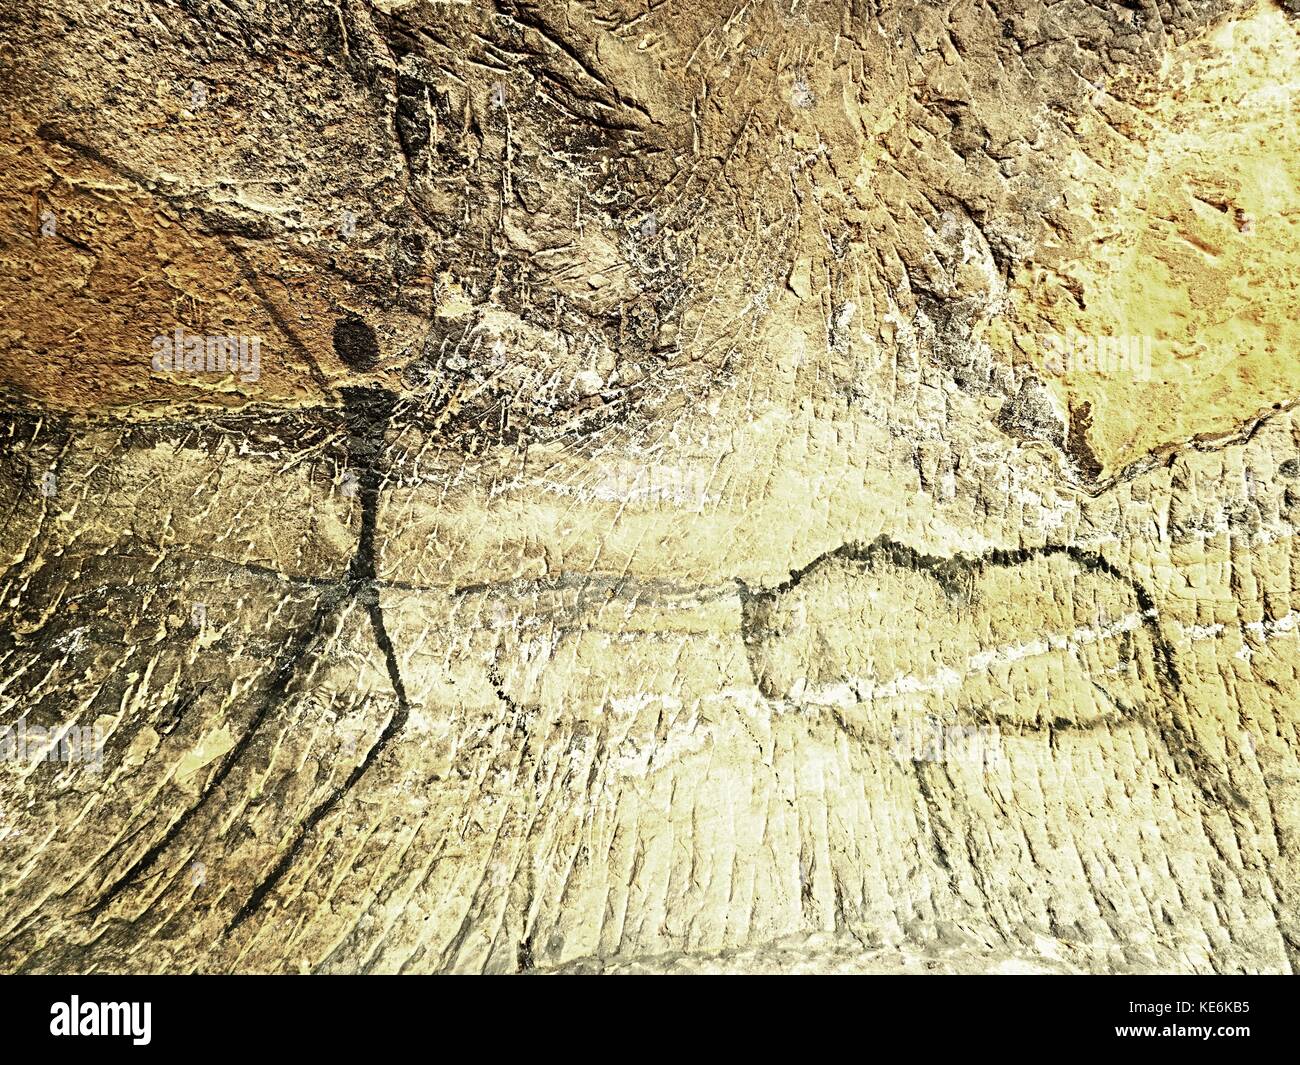 Büffel jagen. Farbe des menschlichen Jagd auf Sandstein Mauer,  prähistorische Bild. schwarzer Kohlenstoff abstrakt Kinder Kunst in der  Sandsteinhöhle. spotlight Shines Stockfotografie - Alamy